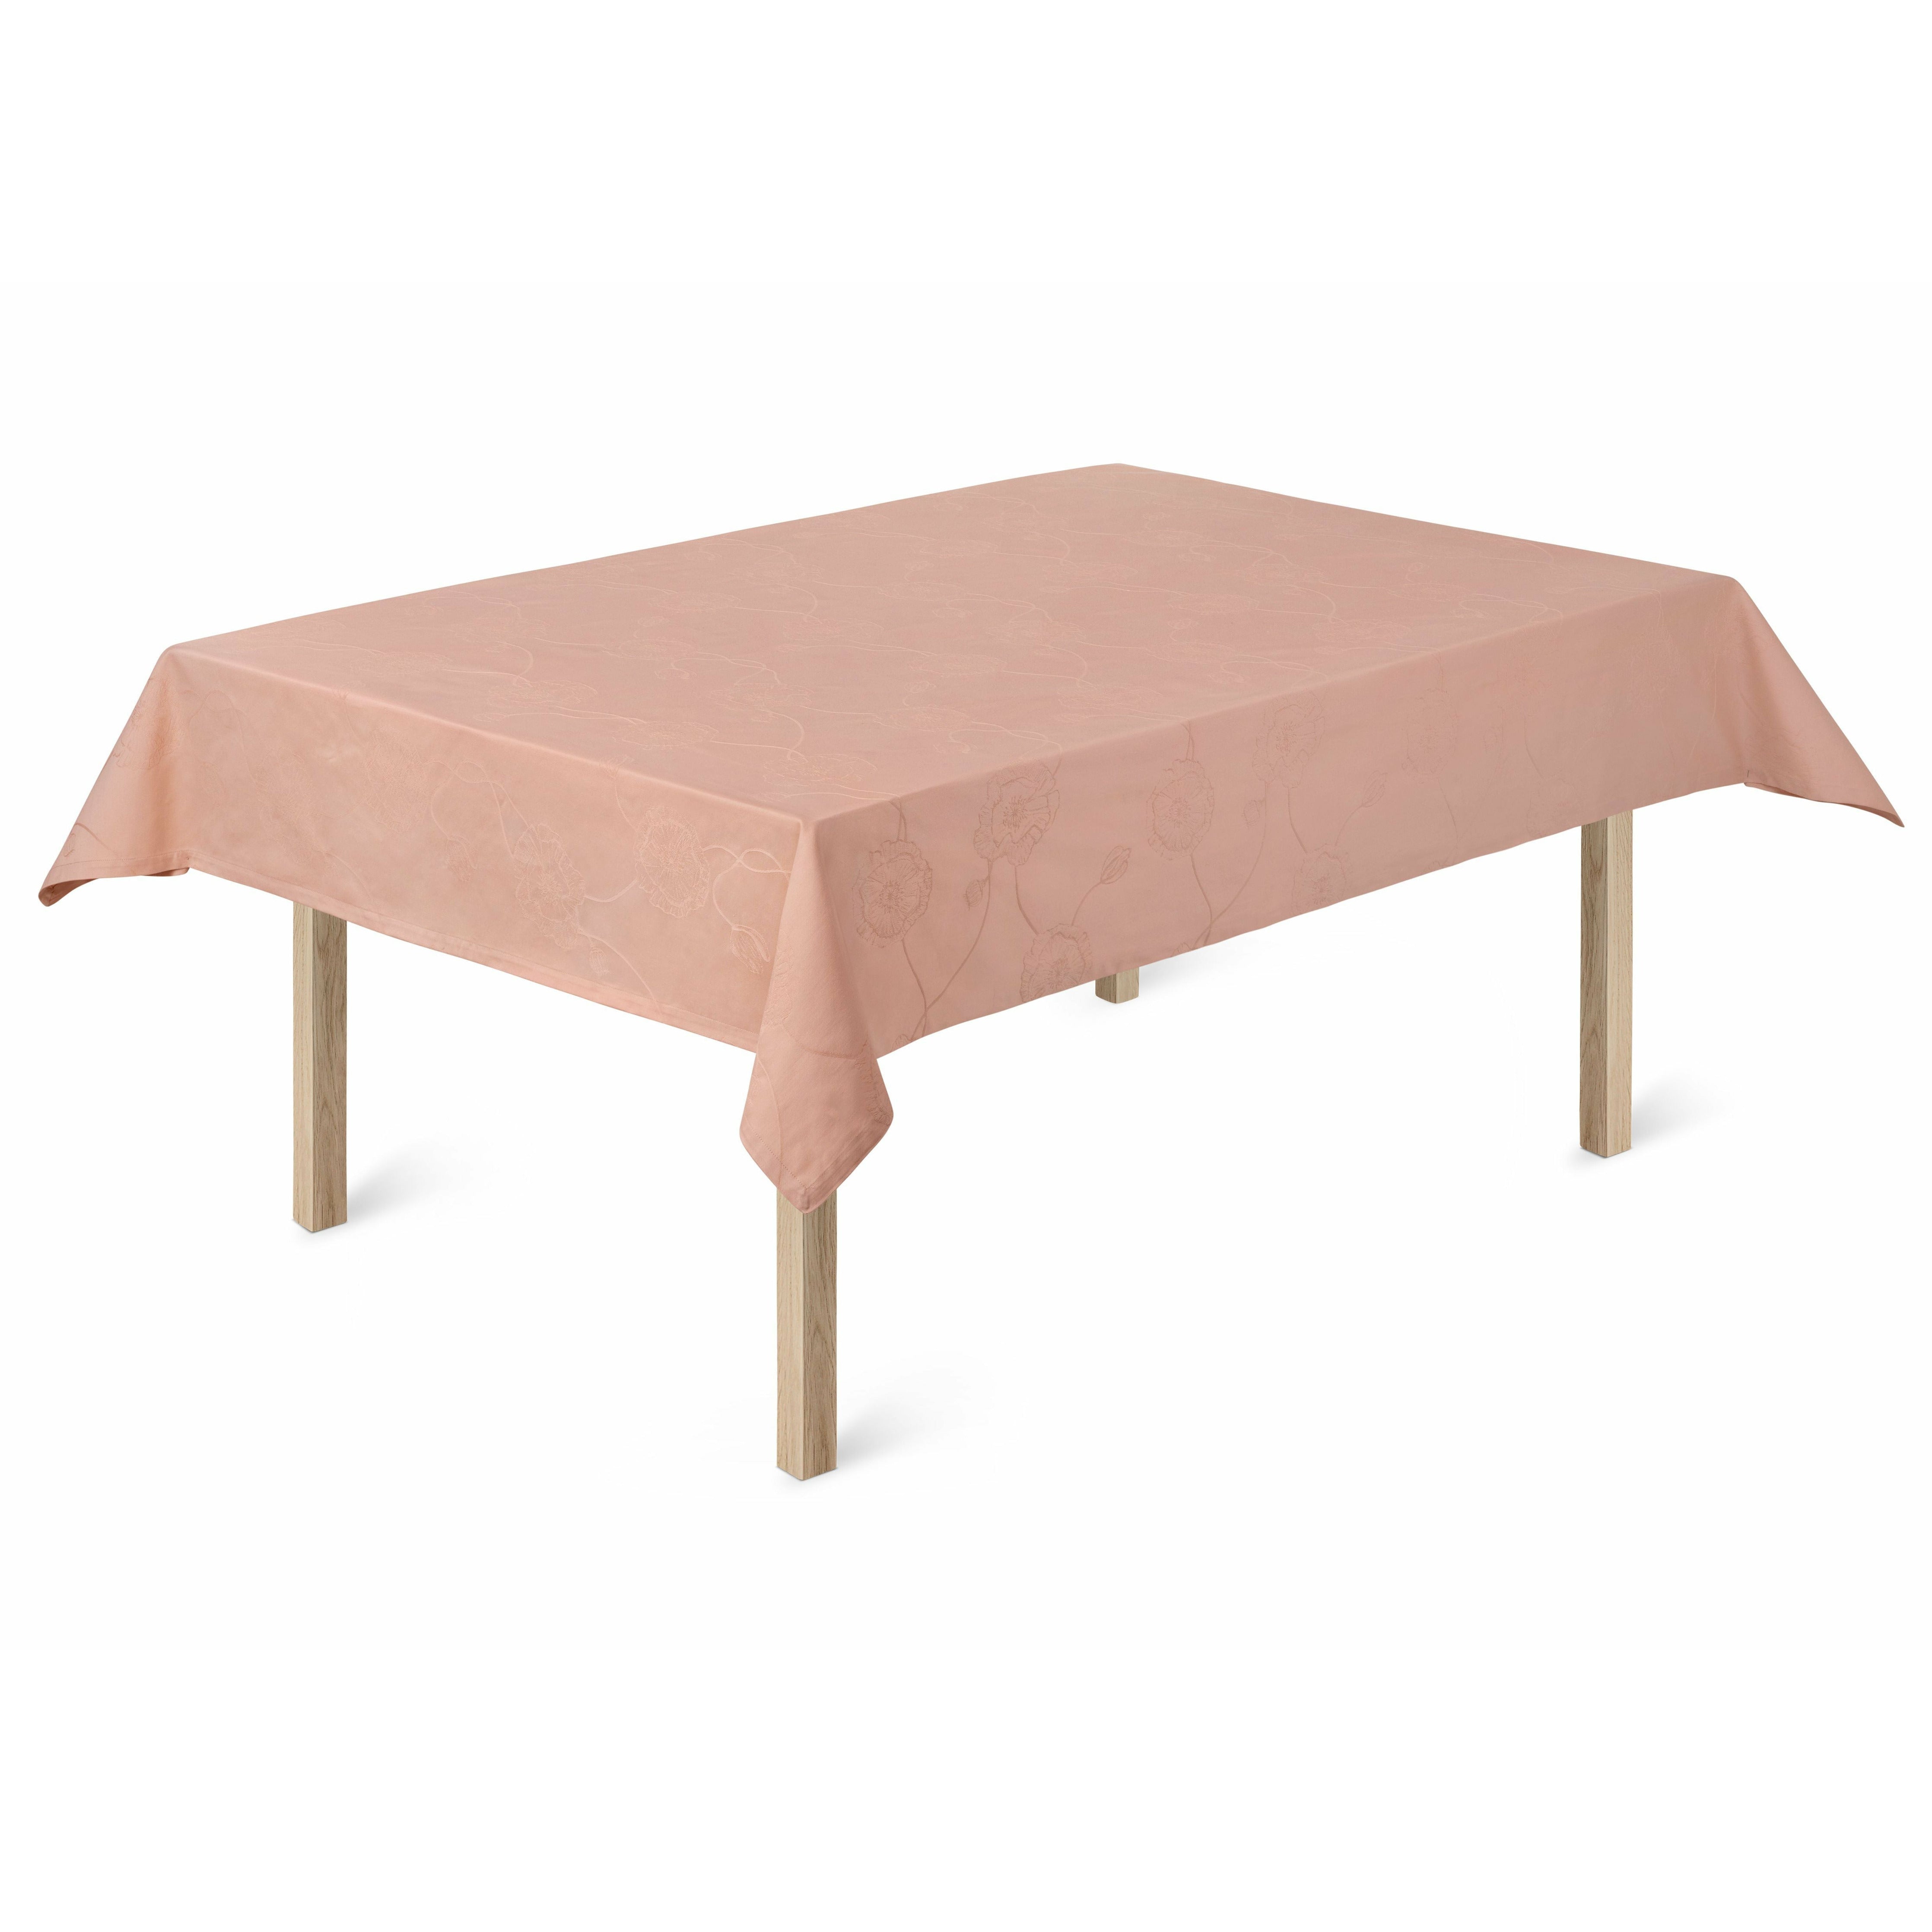 Kähler Hammershøi Poppy Table Cloth 150x220 Cm, Nude